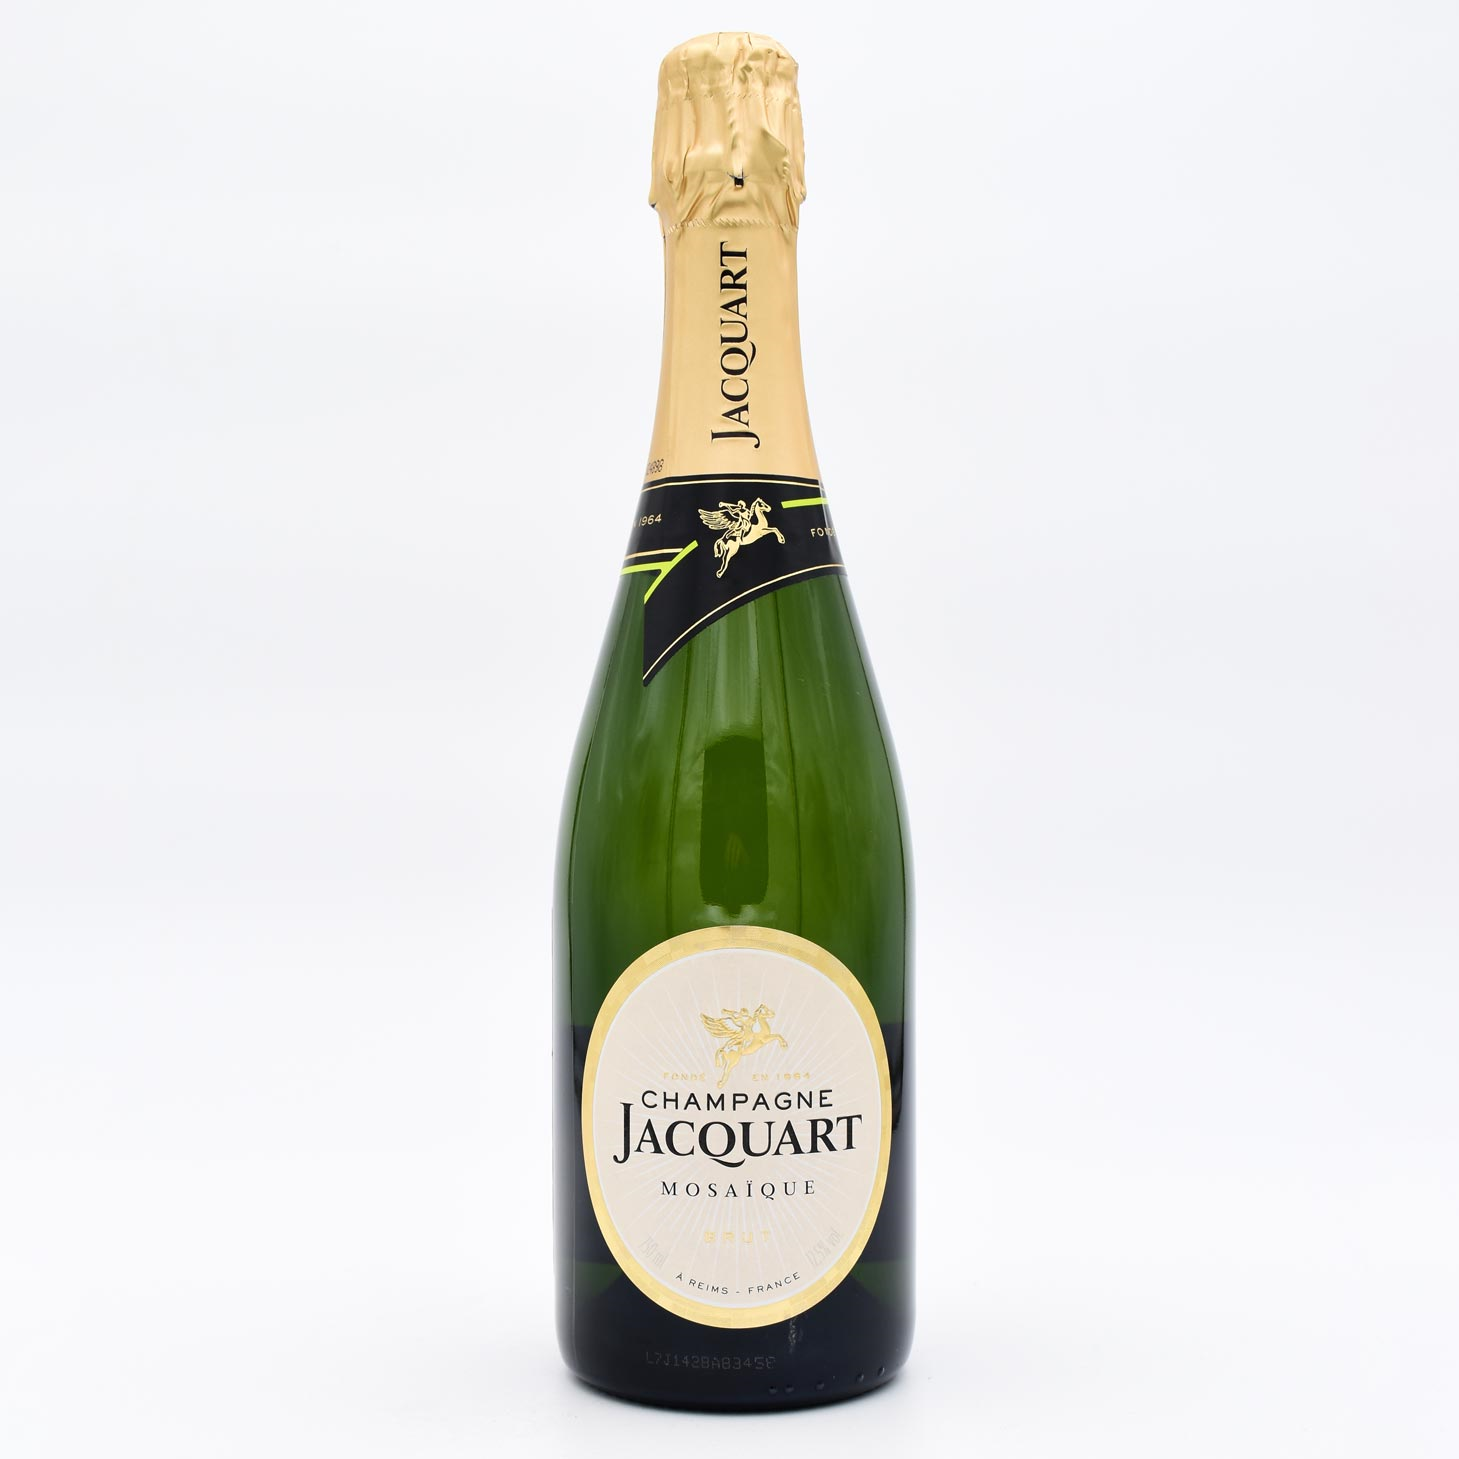 Шампанское Jacquart Brut Mosaique. Шампанское Alliance Champagne Jacquart Brut Mosaique 0.375 л. Шампанское Alliance Champagne Jacquart, Extra Brut Mosaique 0,75 л. Шампанское Alliance Champagne Jacquart, Rose Mosaique 0,75 л.